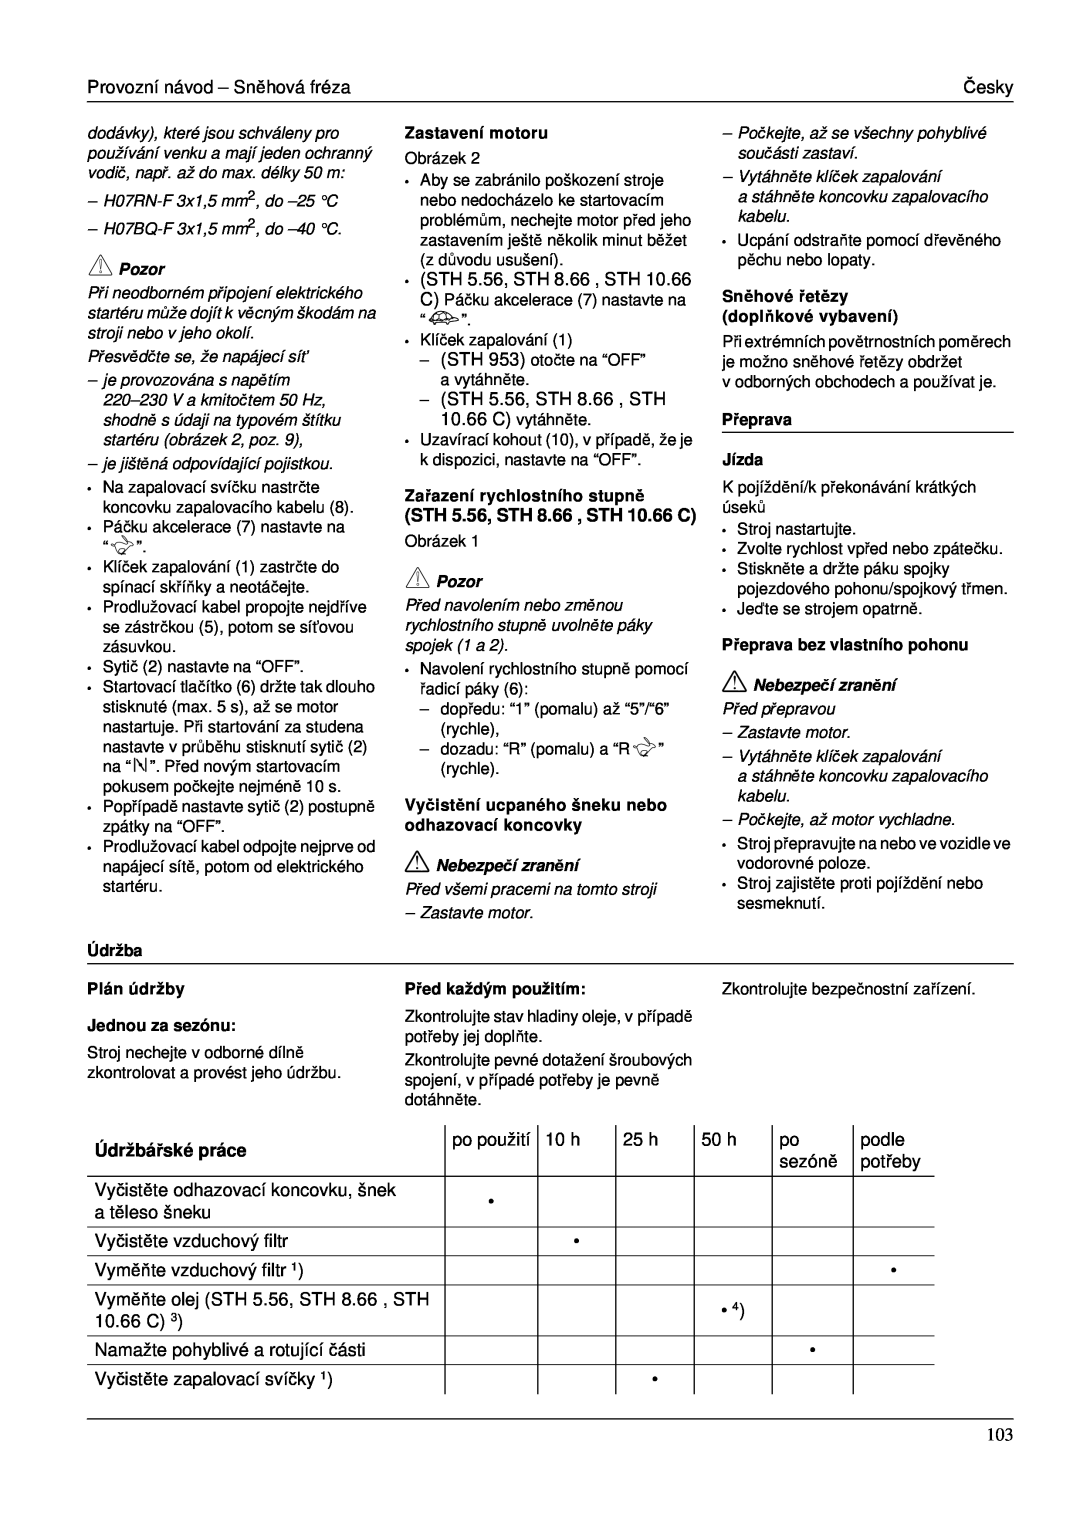 Karcher STH 953 manual STH 5.56, STH 8.66 , STH 10.66 C, Údržbá řské práce, Údržba, Zastavení motoru, Přeprava Jízda 